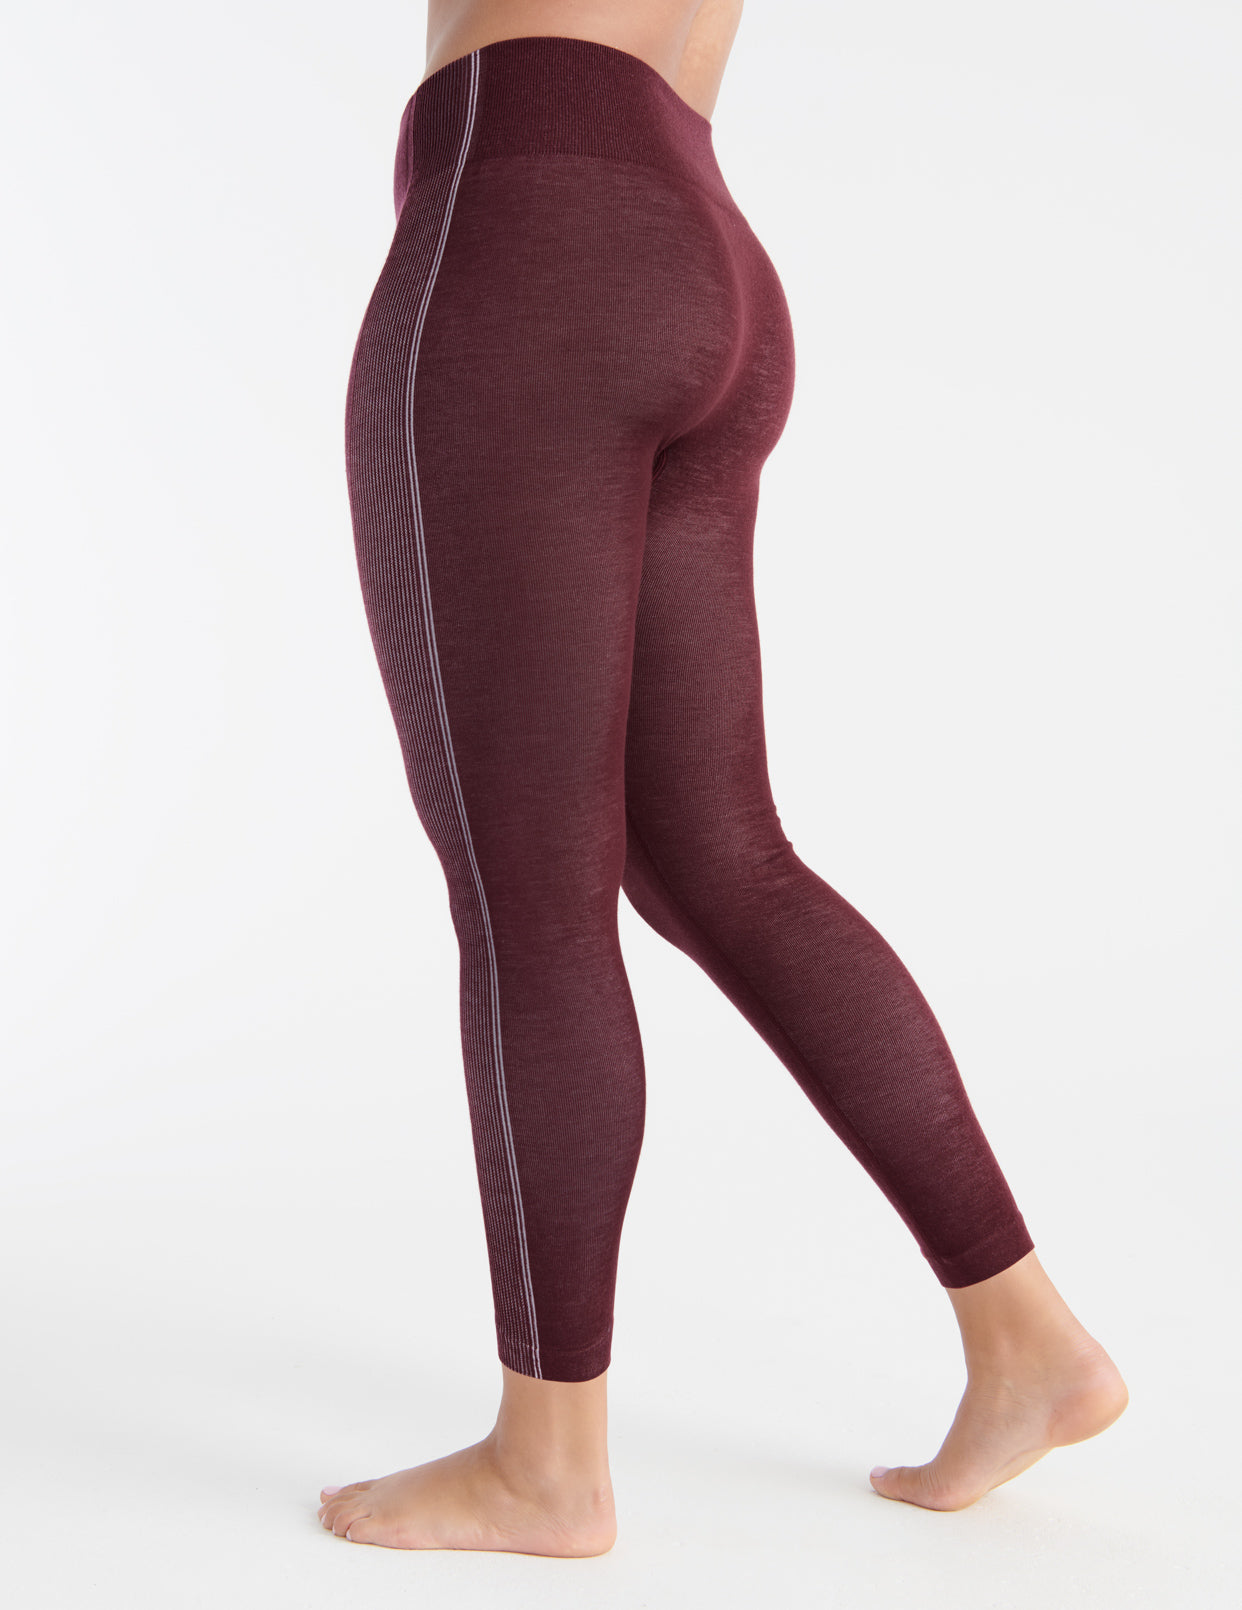 Thermal Underwear for Women Long Underwear Fleece Lined Base Layer Lon –  Genuwii